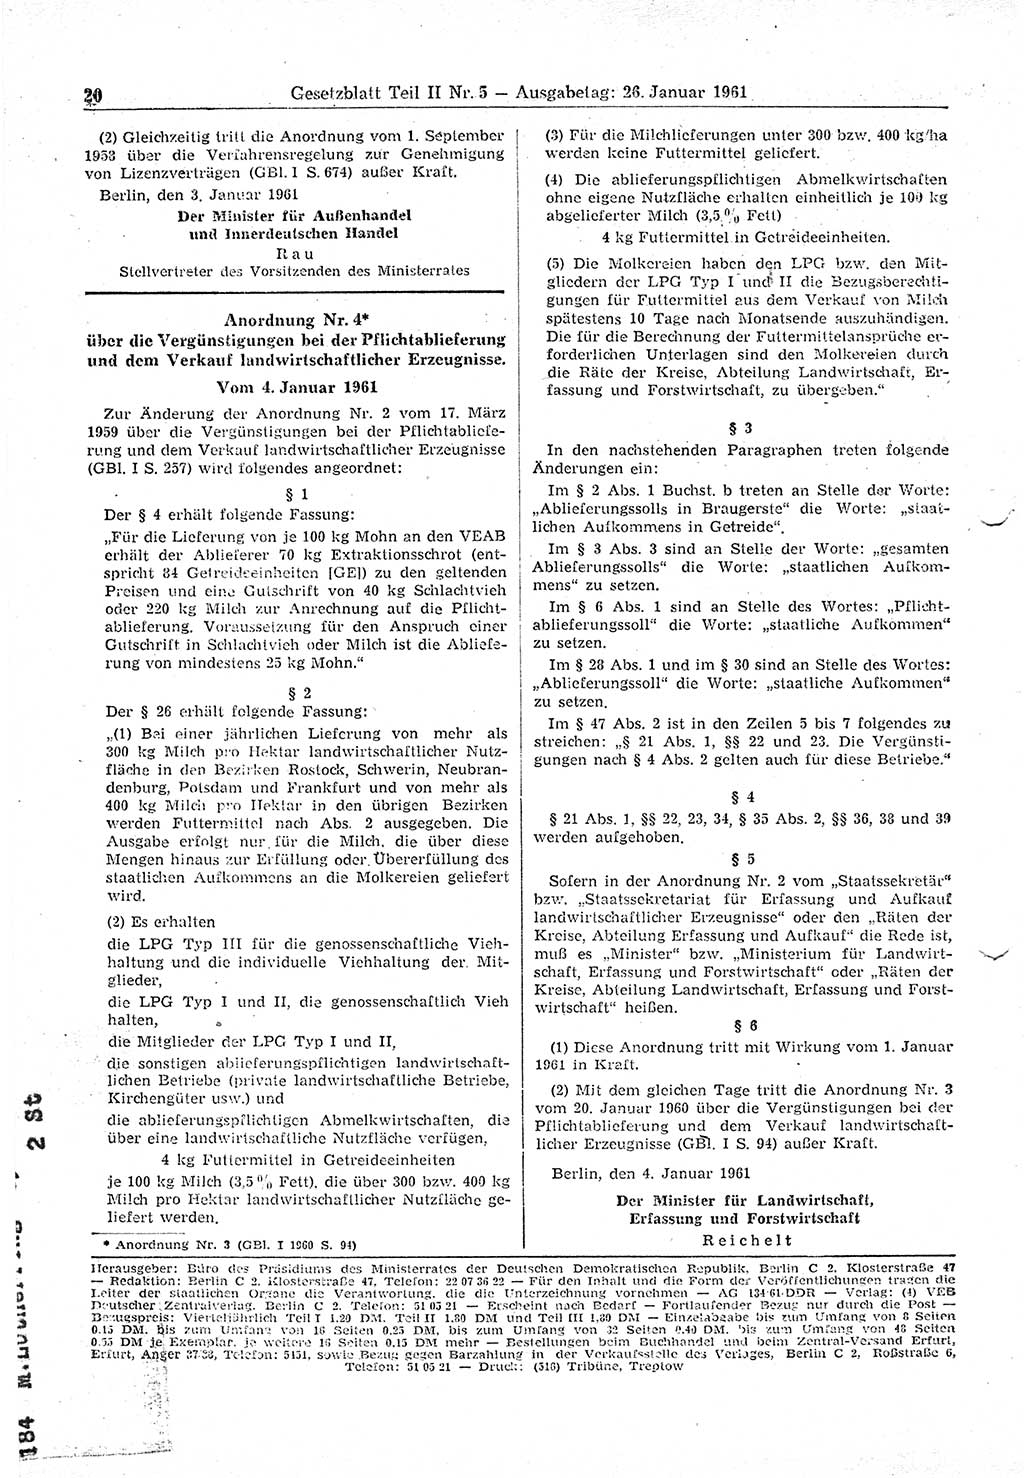 Gesetzblatt (GBl.) der Deutschen Demokratischen Republik (DDR) Teil ⅠⅠ 1961, Seite 20 (GBl. DDR ⅠⅠ 1961, S. 20)